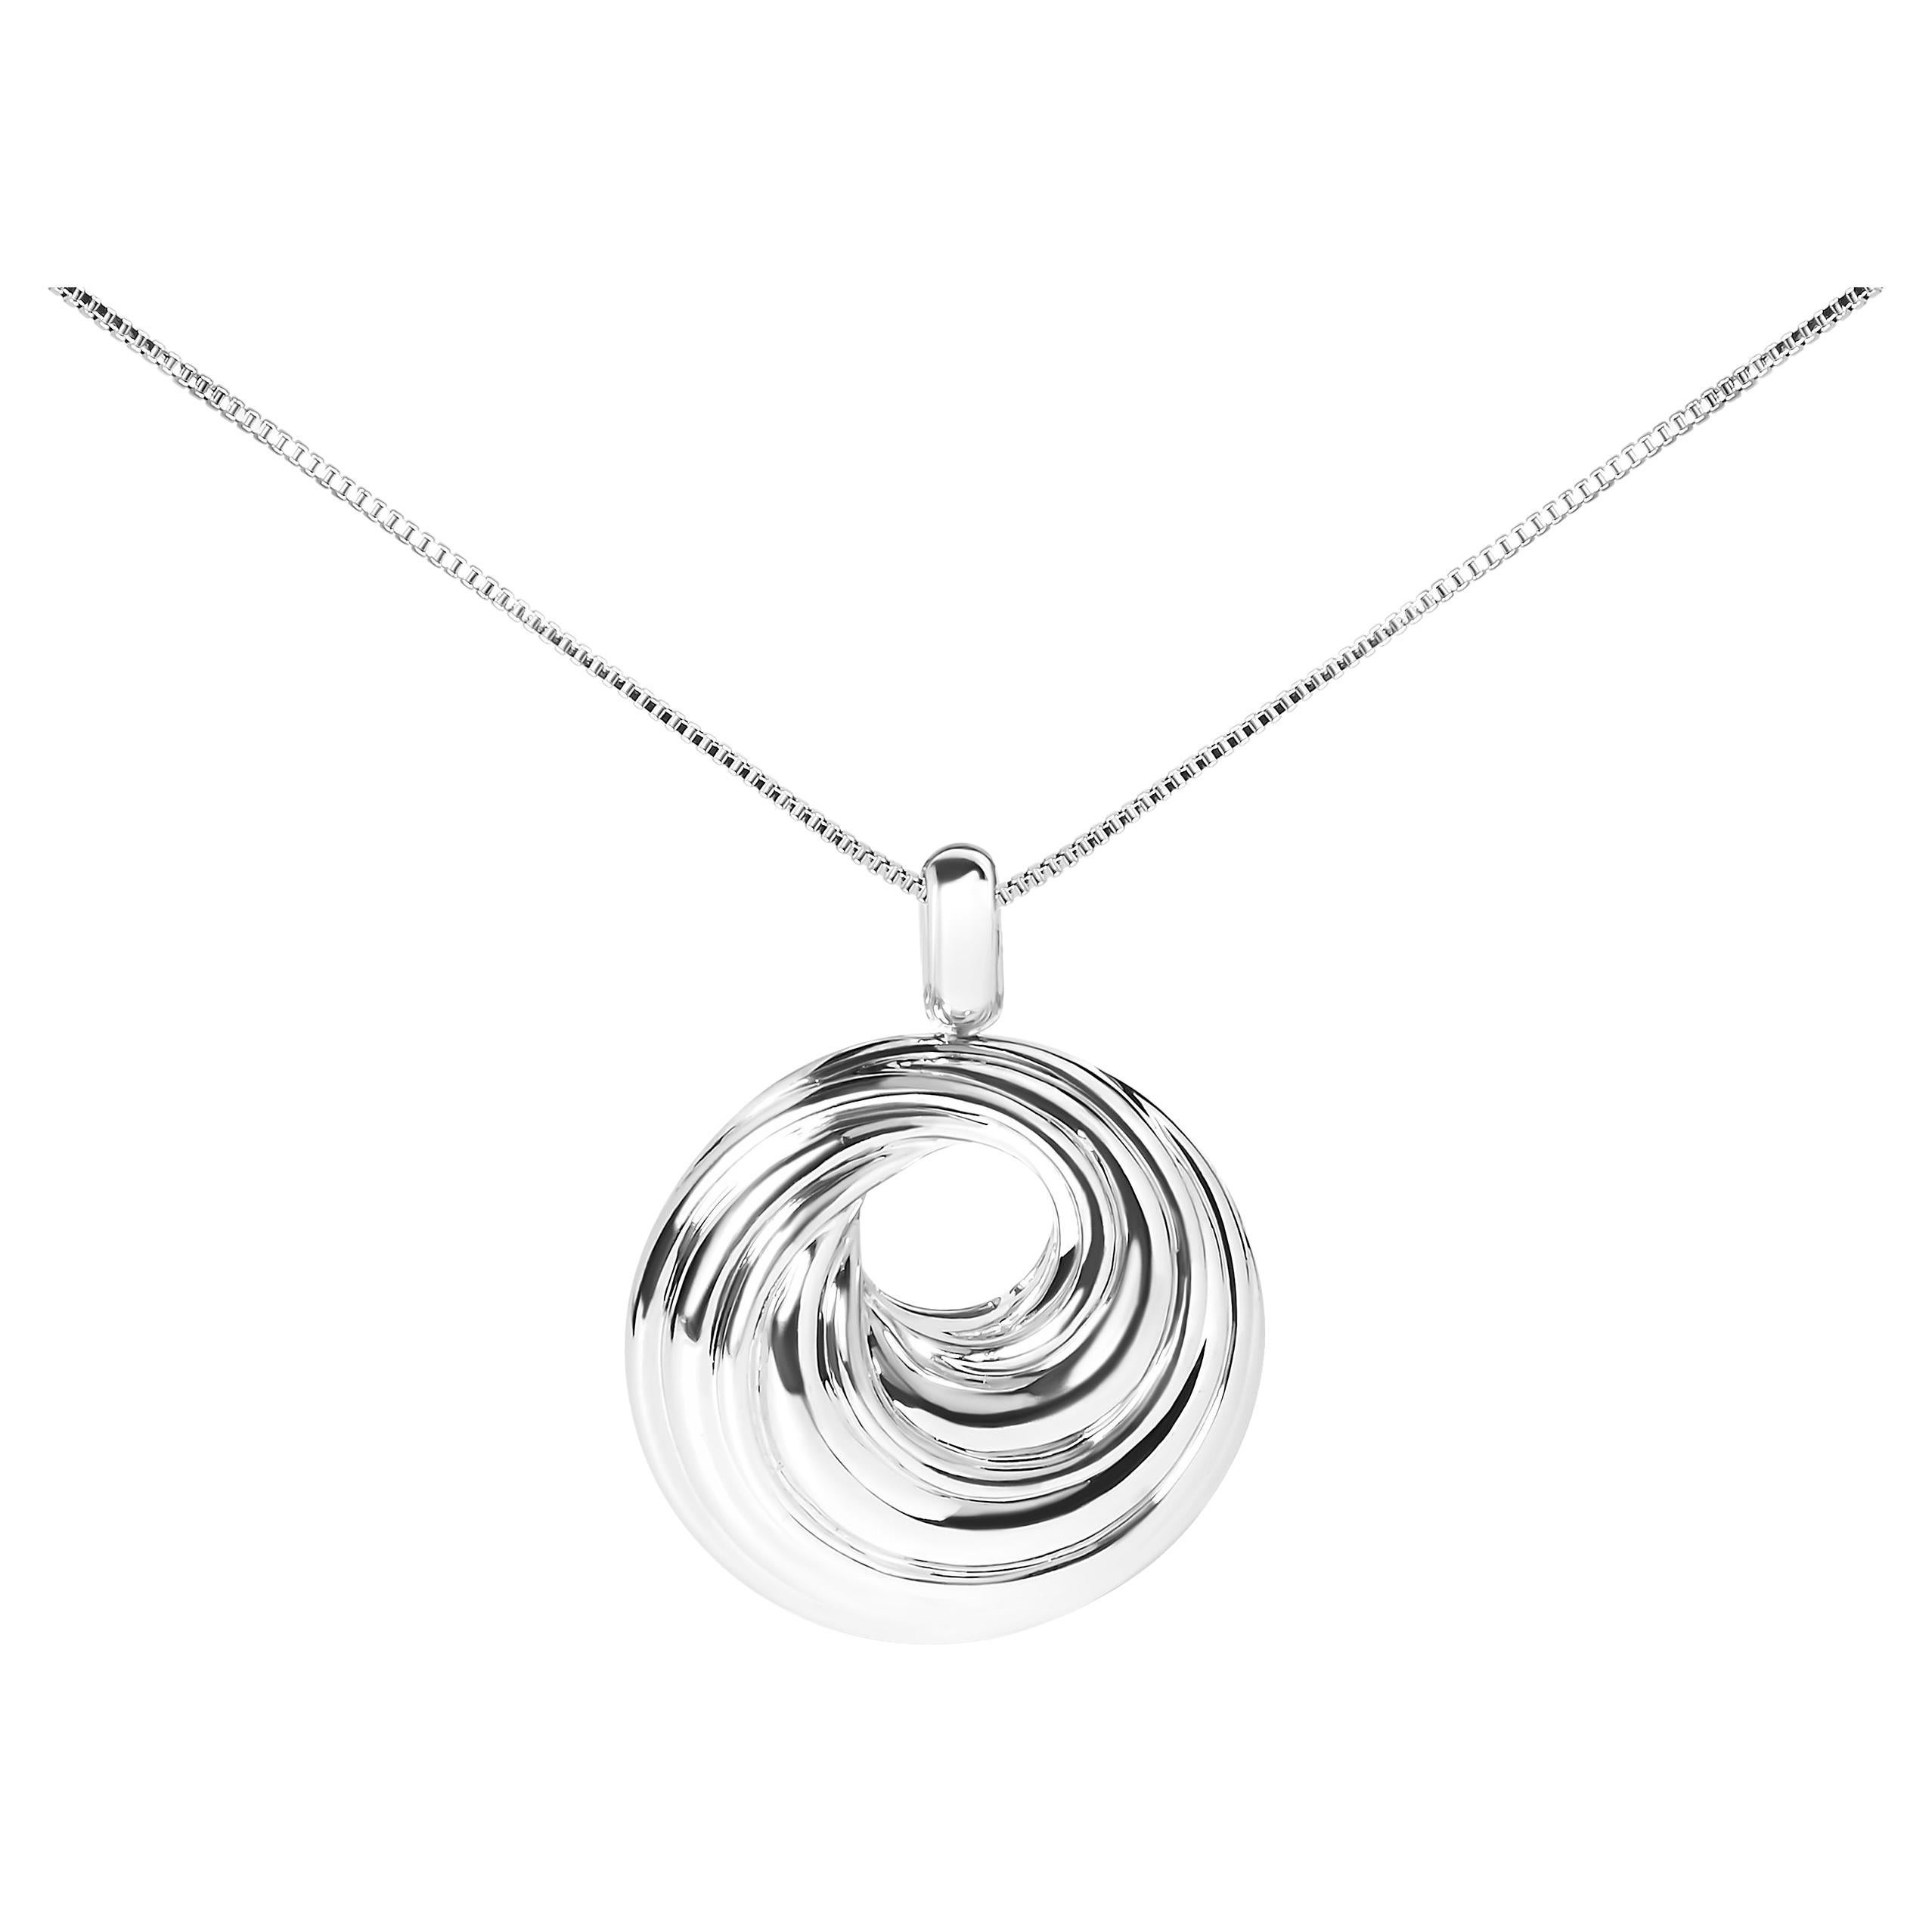 Oval Swirl Locket Necklace Sterling Silver 18